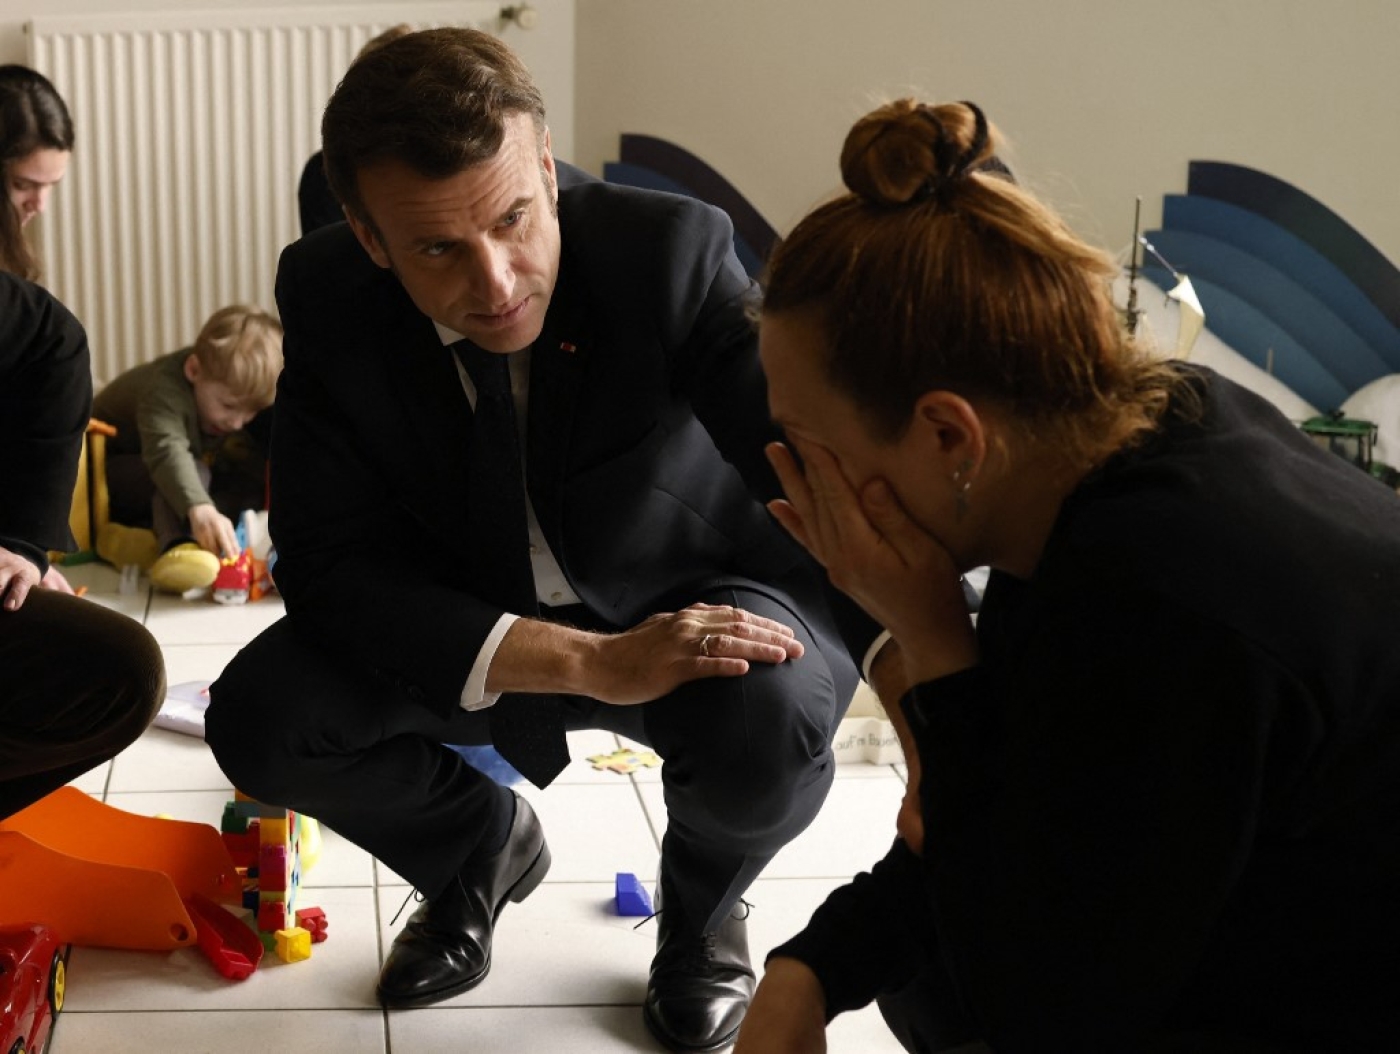  Le président français, Emmanuel Macron, visite un centre pour réfugiés ukrainiens dans le Maine-et-Loire, le 15 mars 2022 (AFP/Yoan Valat)